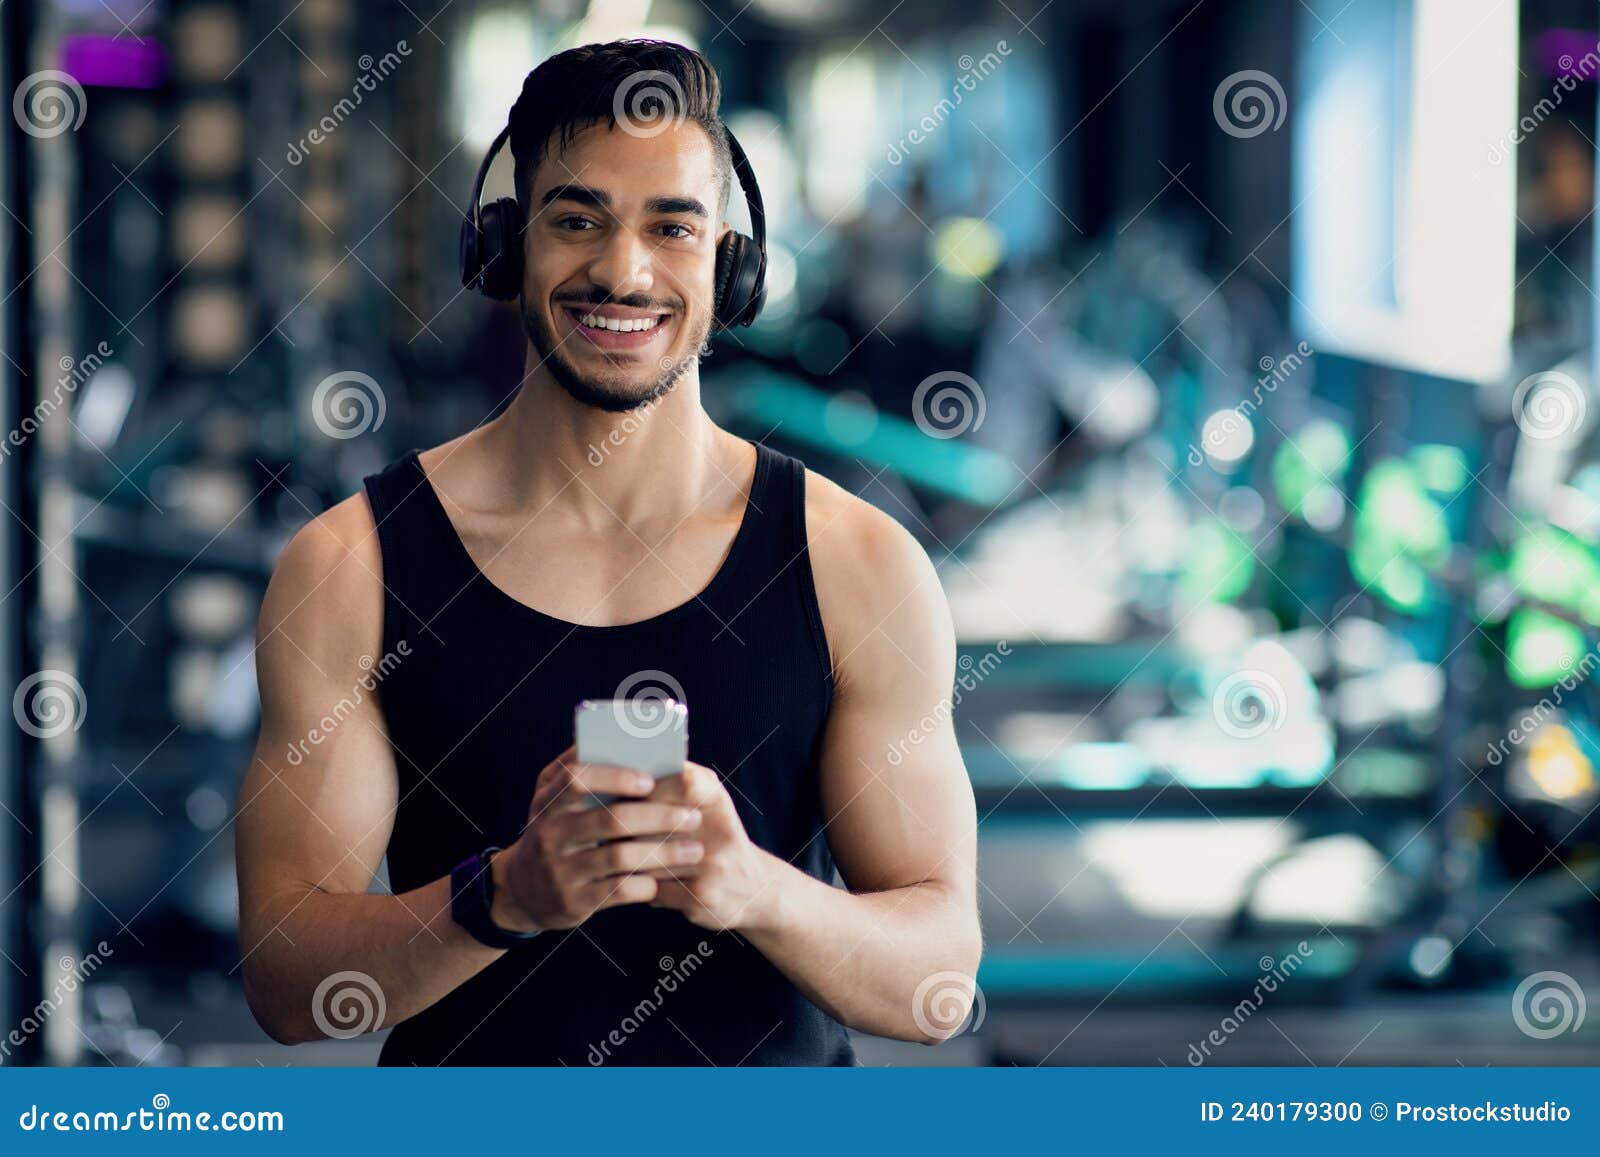 Deportista asiático en forma usando auriculares blancos y usando el  teléfono móvil para escuchar música mientras descansa o antes de correr  haciendo ejercicio en el gimnasio concepto de gimnasio deportivo saludable